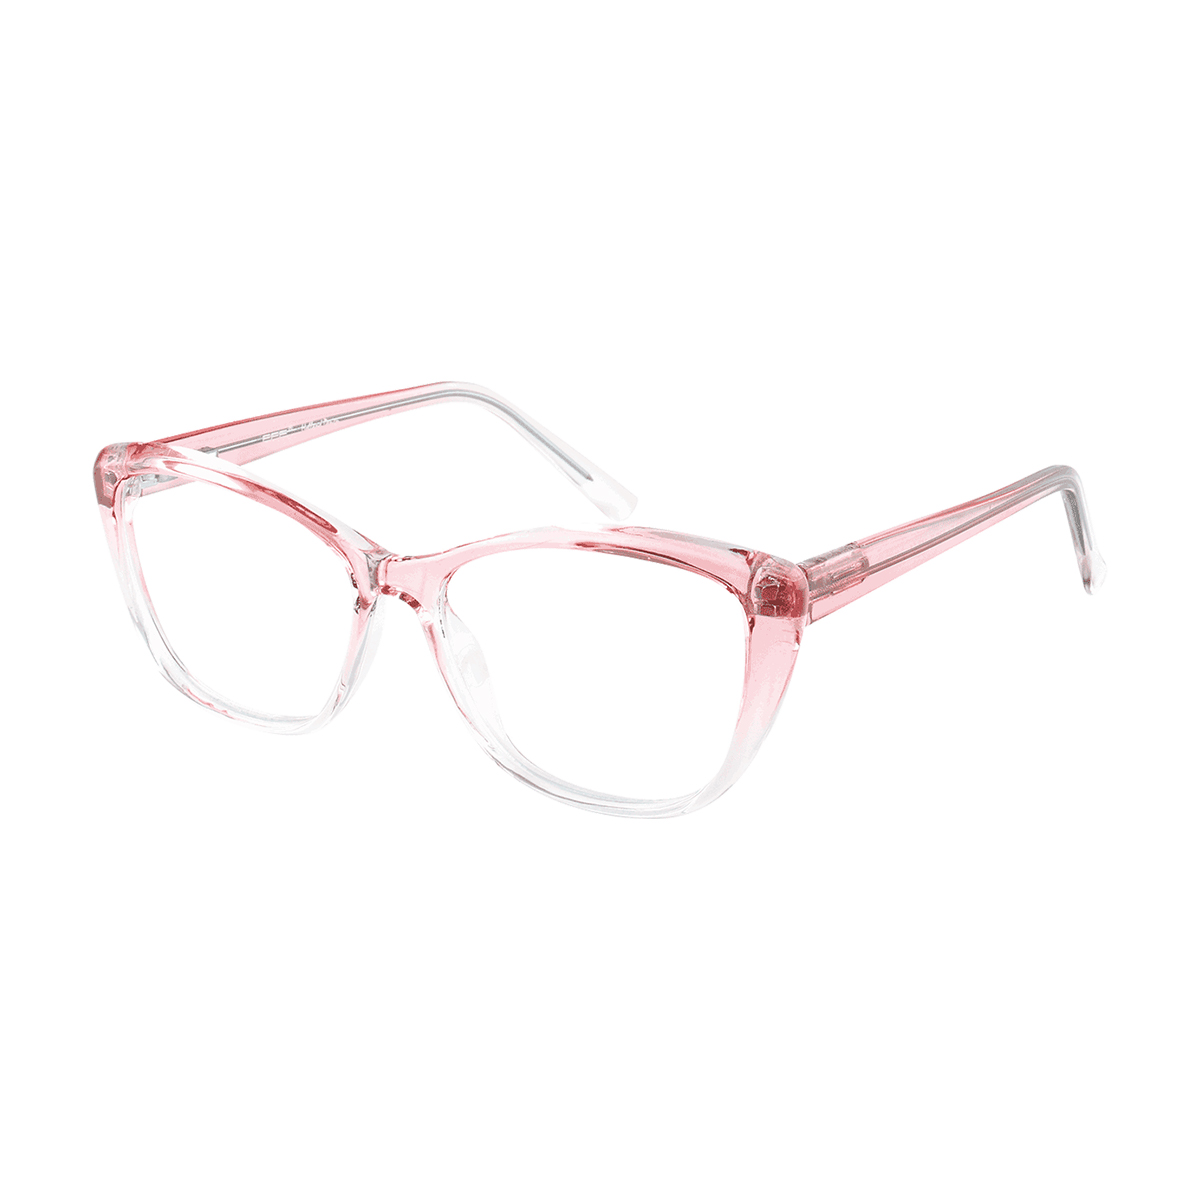 Salona - Cat-eye Pink Reading Glasses for Women